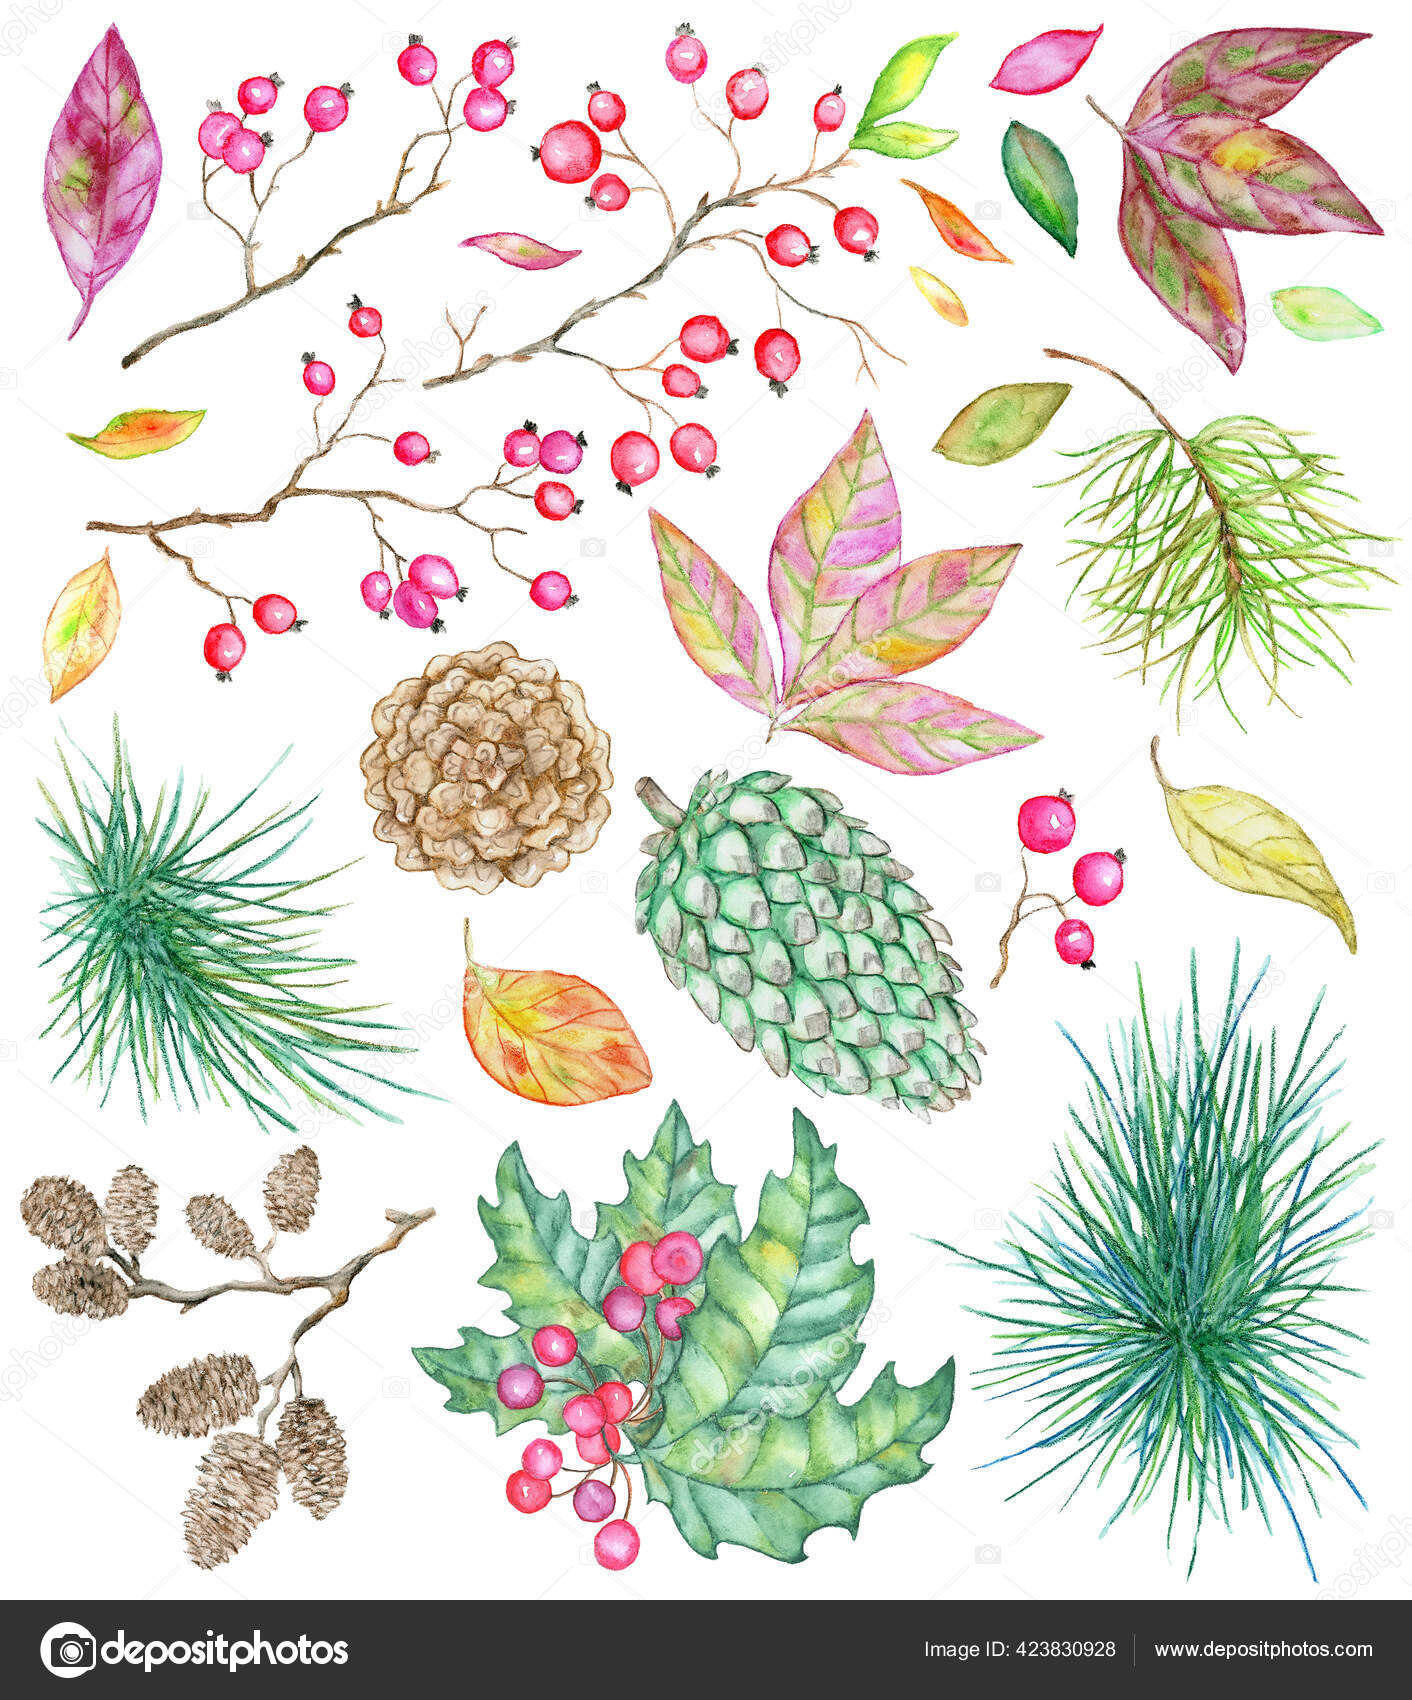 松や針葉樹の枝 ベリー 葉や白に隔離されたコーンとクリスマスと新年の植物セット グリーティングカード用デザイン要素付き手描きヴィンテージ水彩イラスト ストック写真 C Samiramay